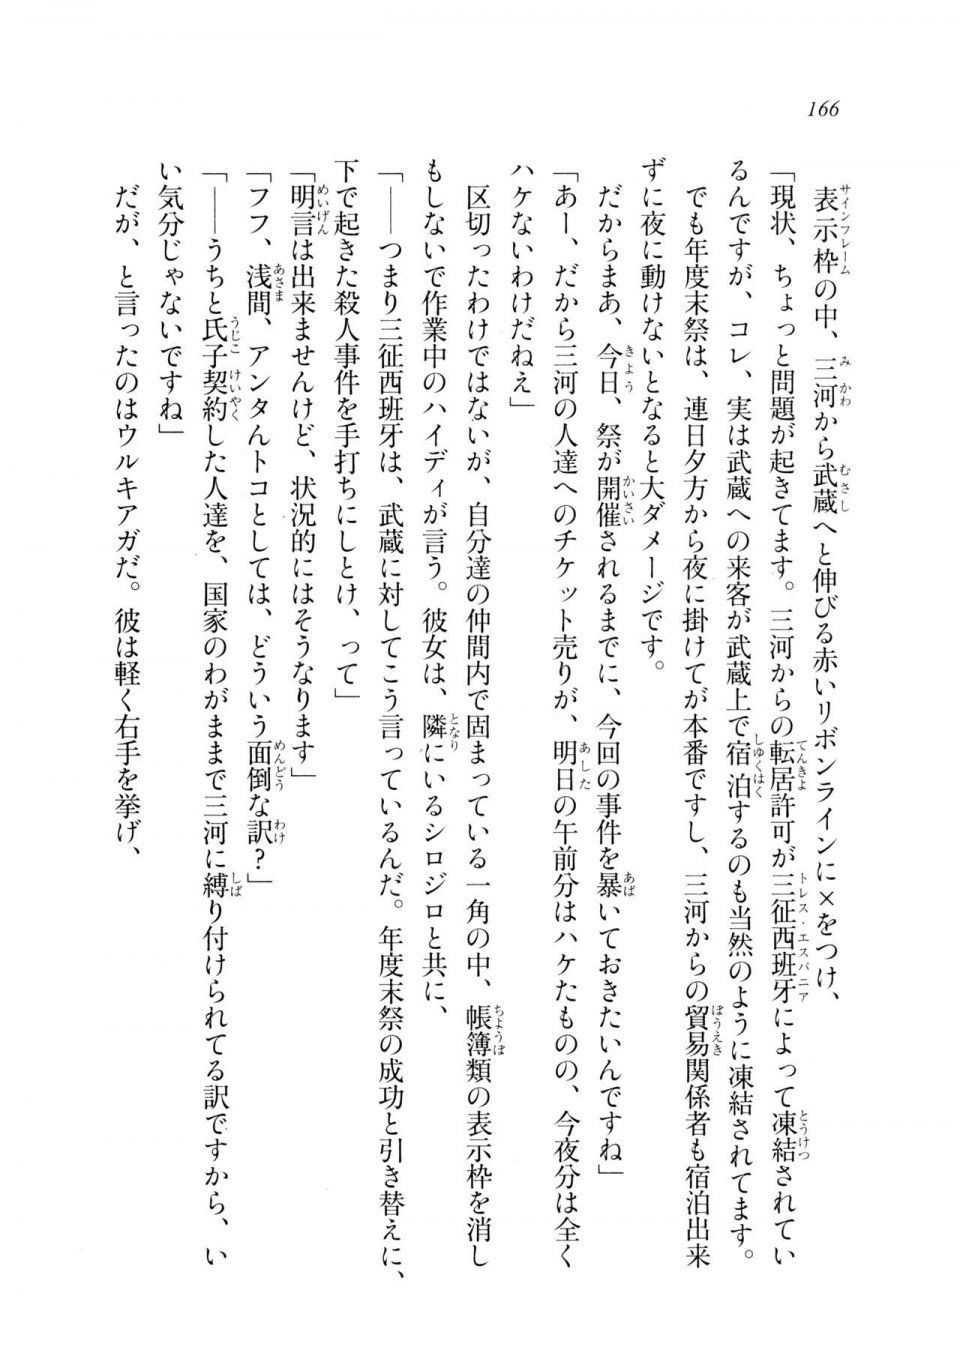 Kyoukai Senjou no Horizon LN Sidestory Vol 2 - Photo #164